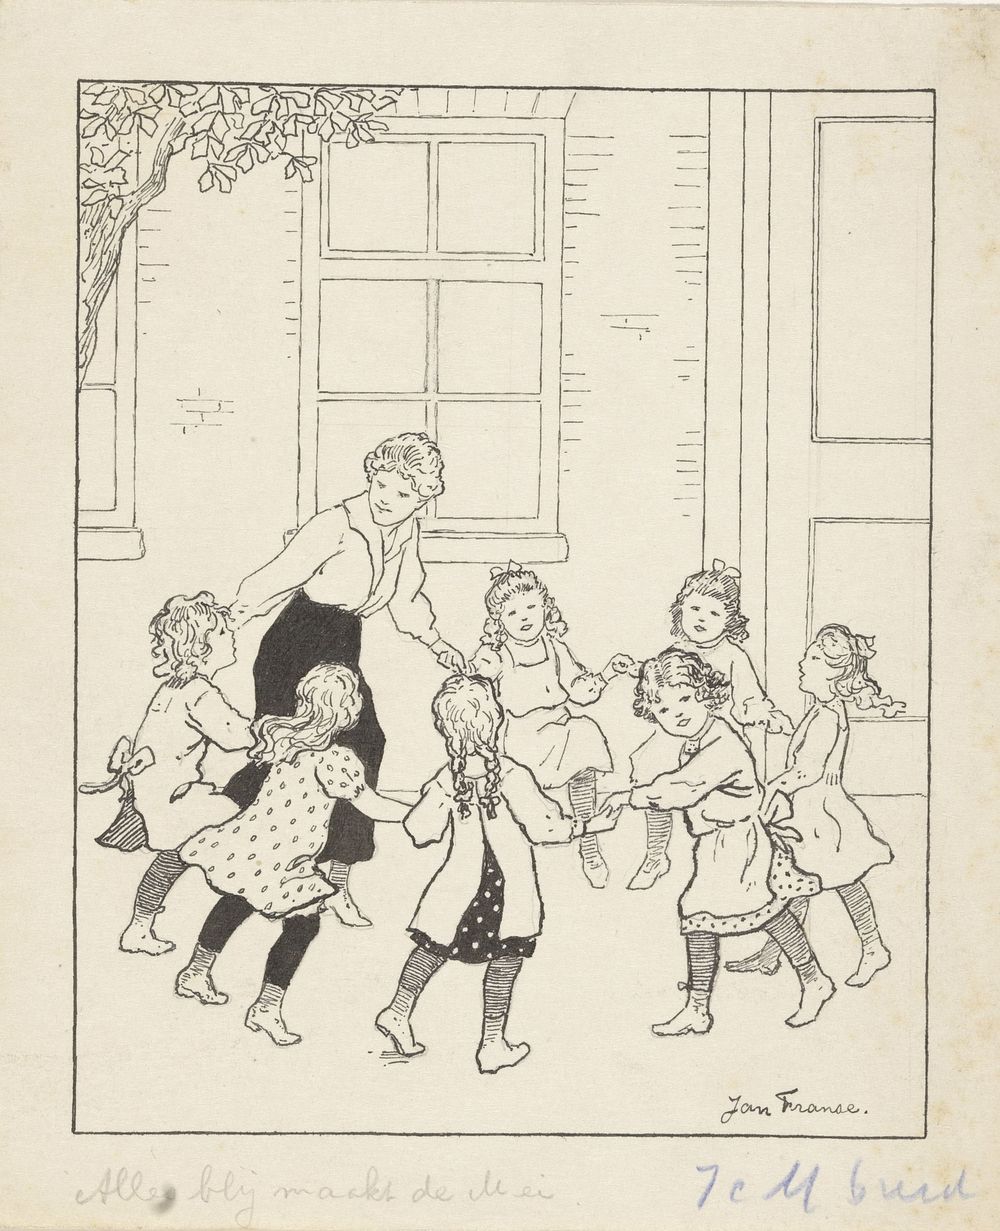 In het rond dansende meisjes (c. 1915 - c. 1930) by Jan Franse